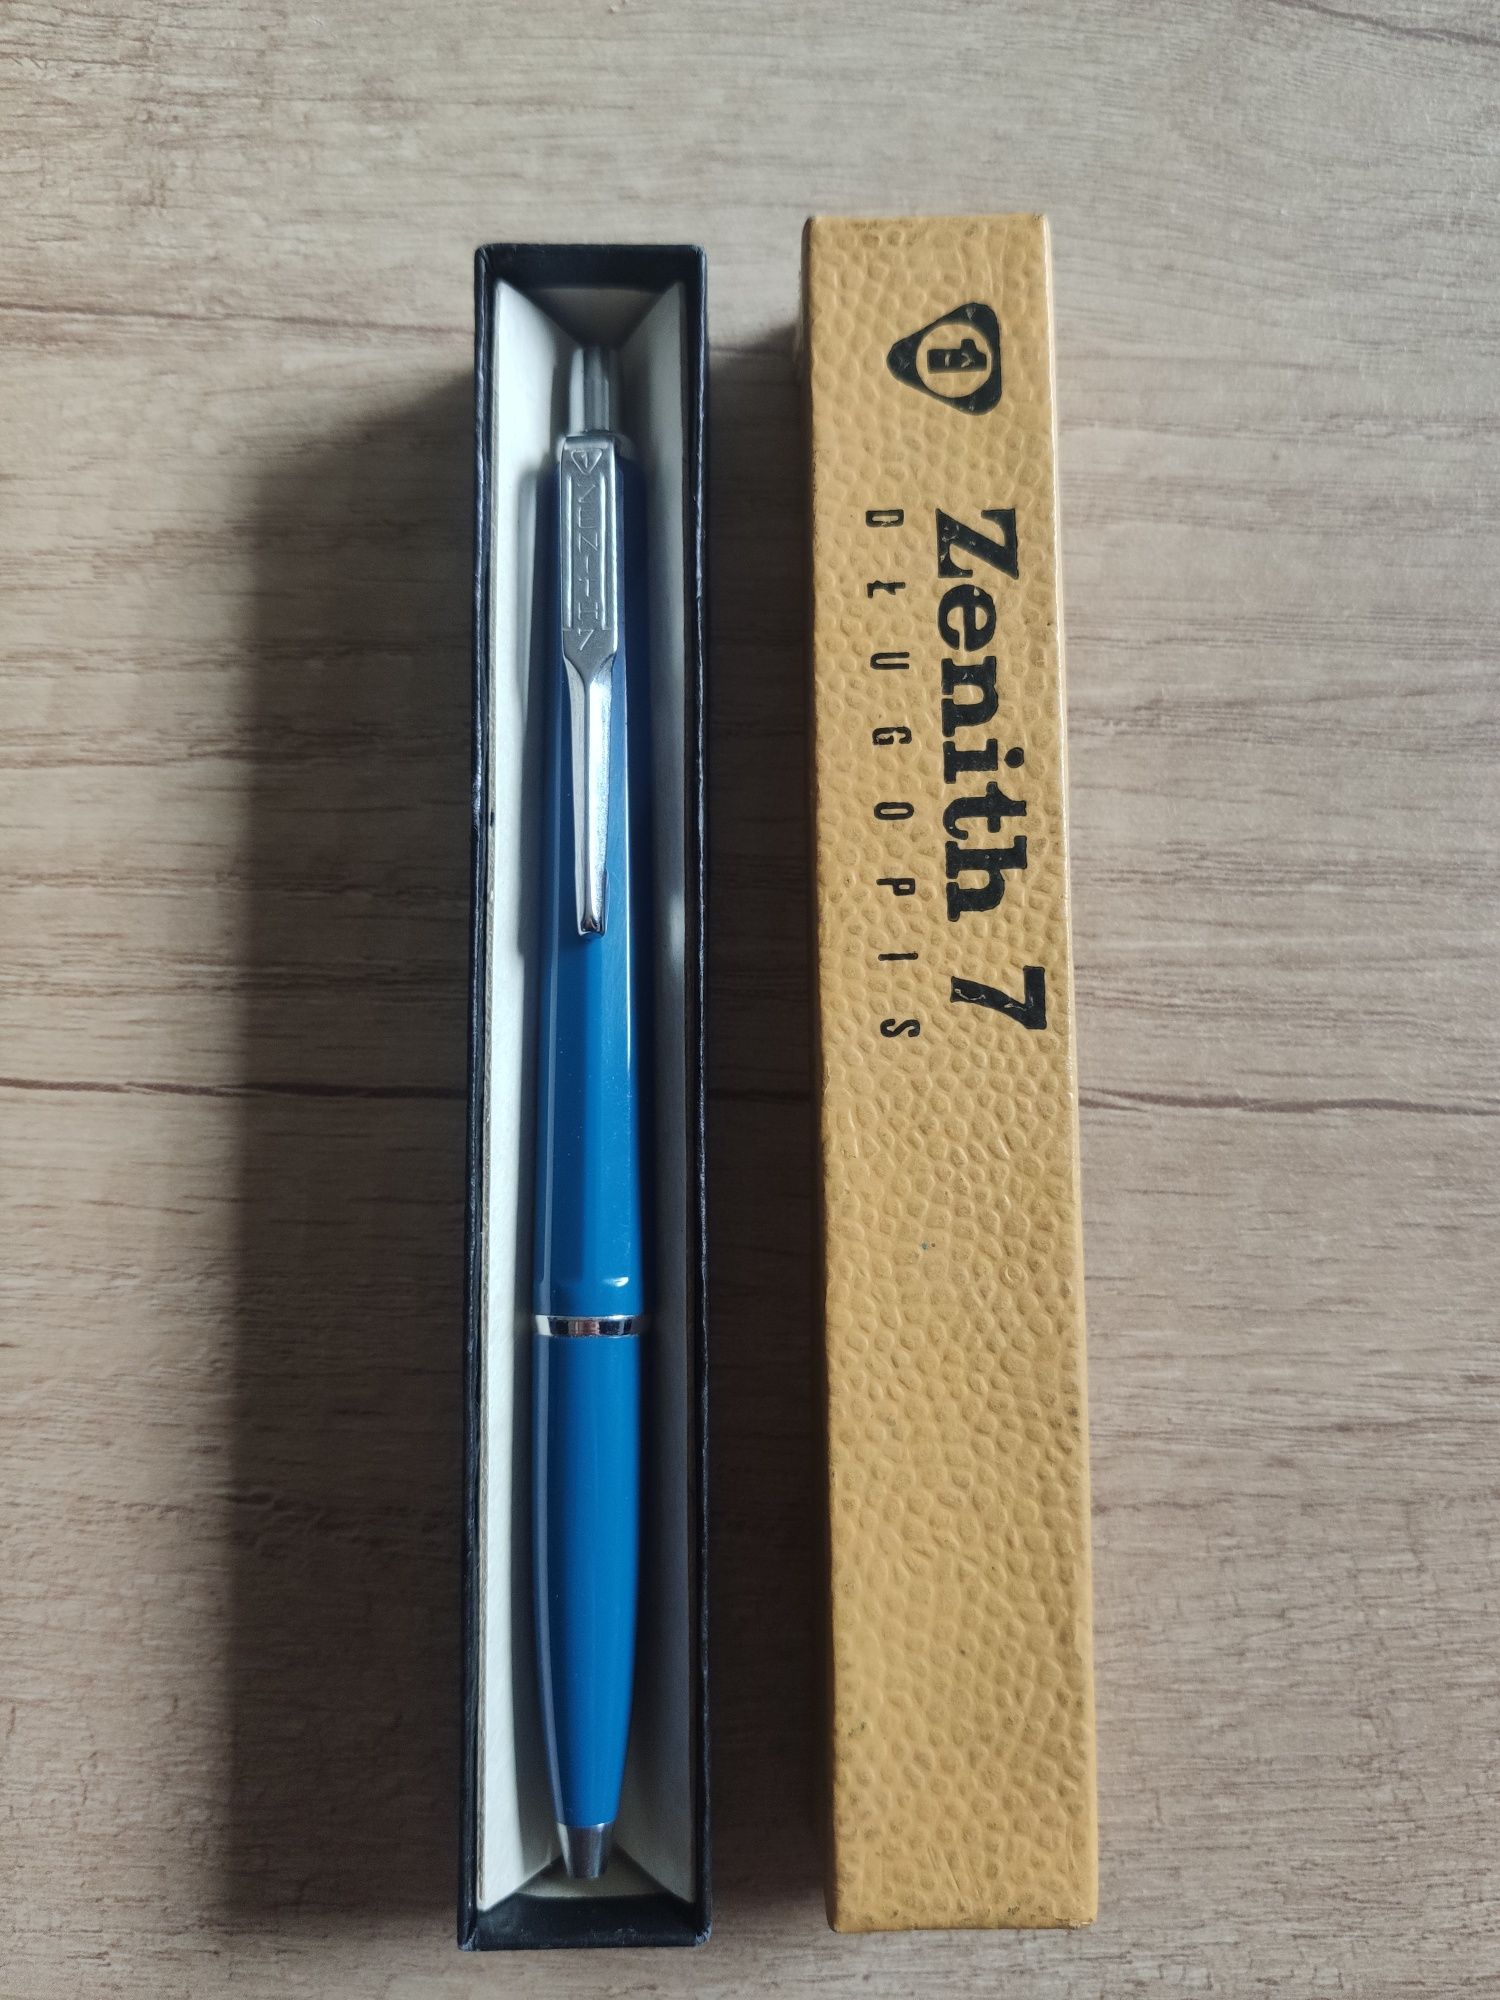 Długopis zenith 7, orginalne opakowanie, wkład zenith piszący.